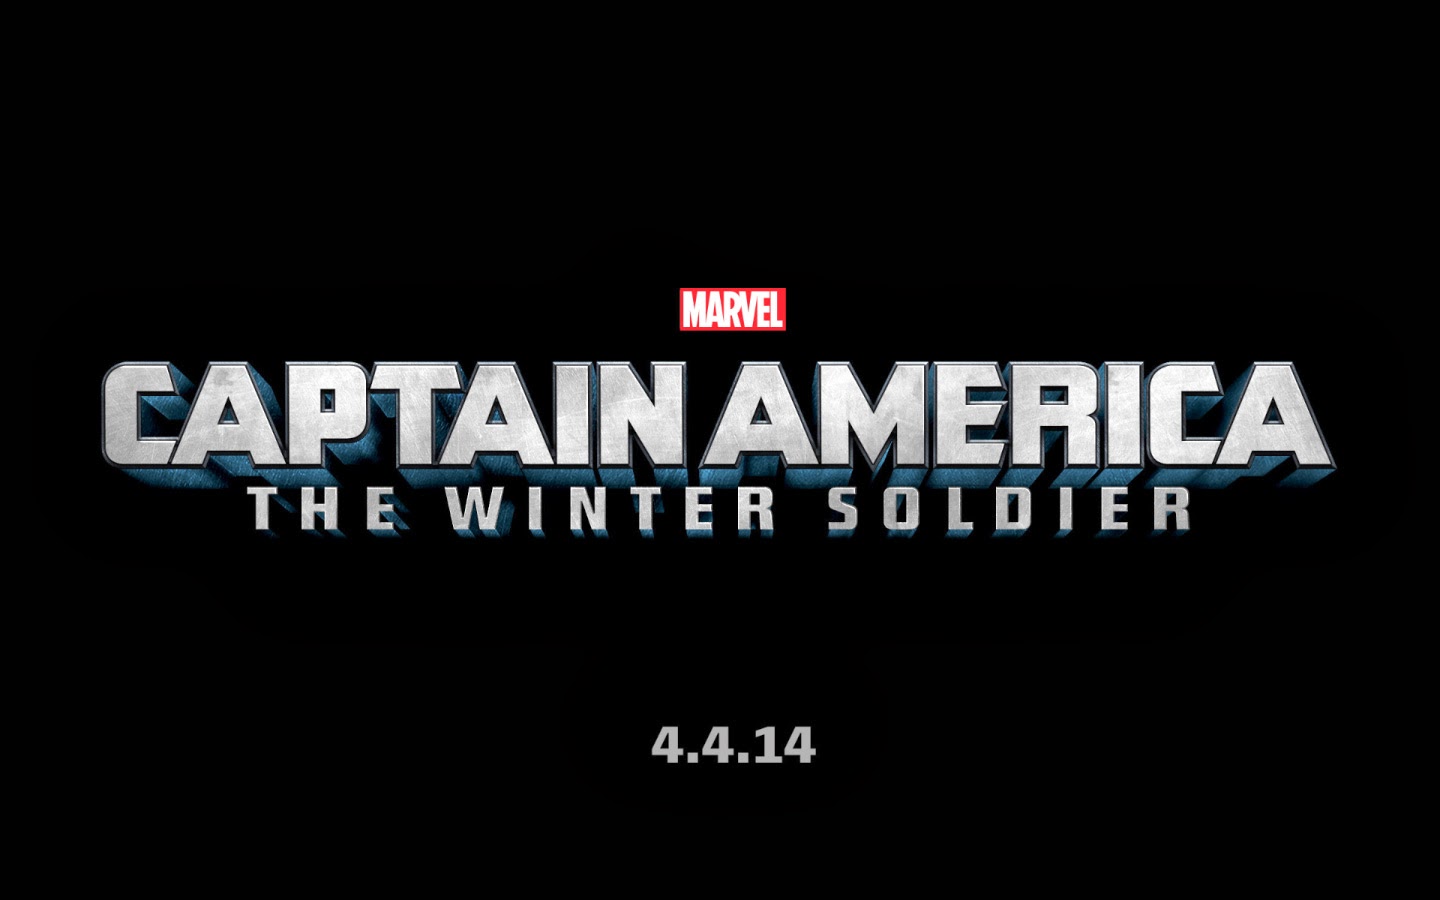 Captain America 2 Coming April 2014"